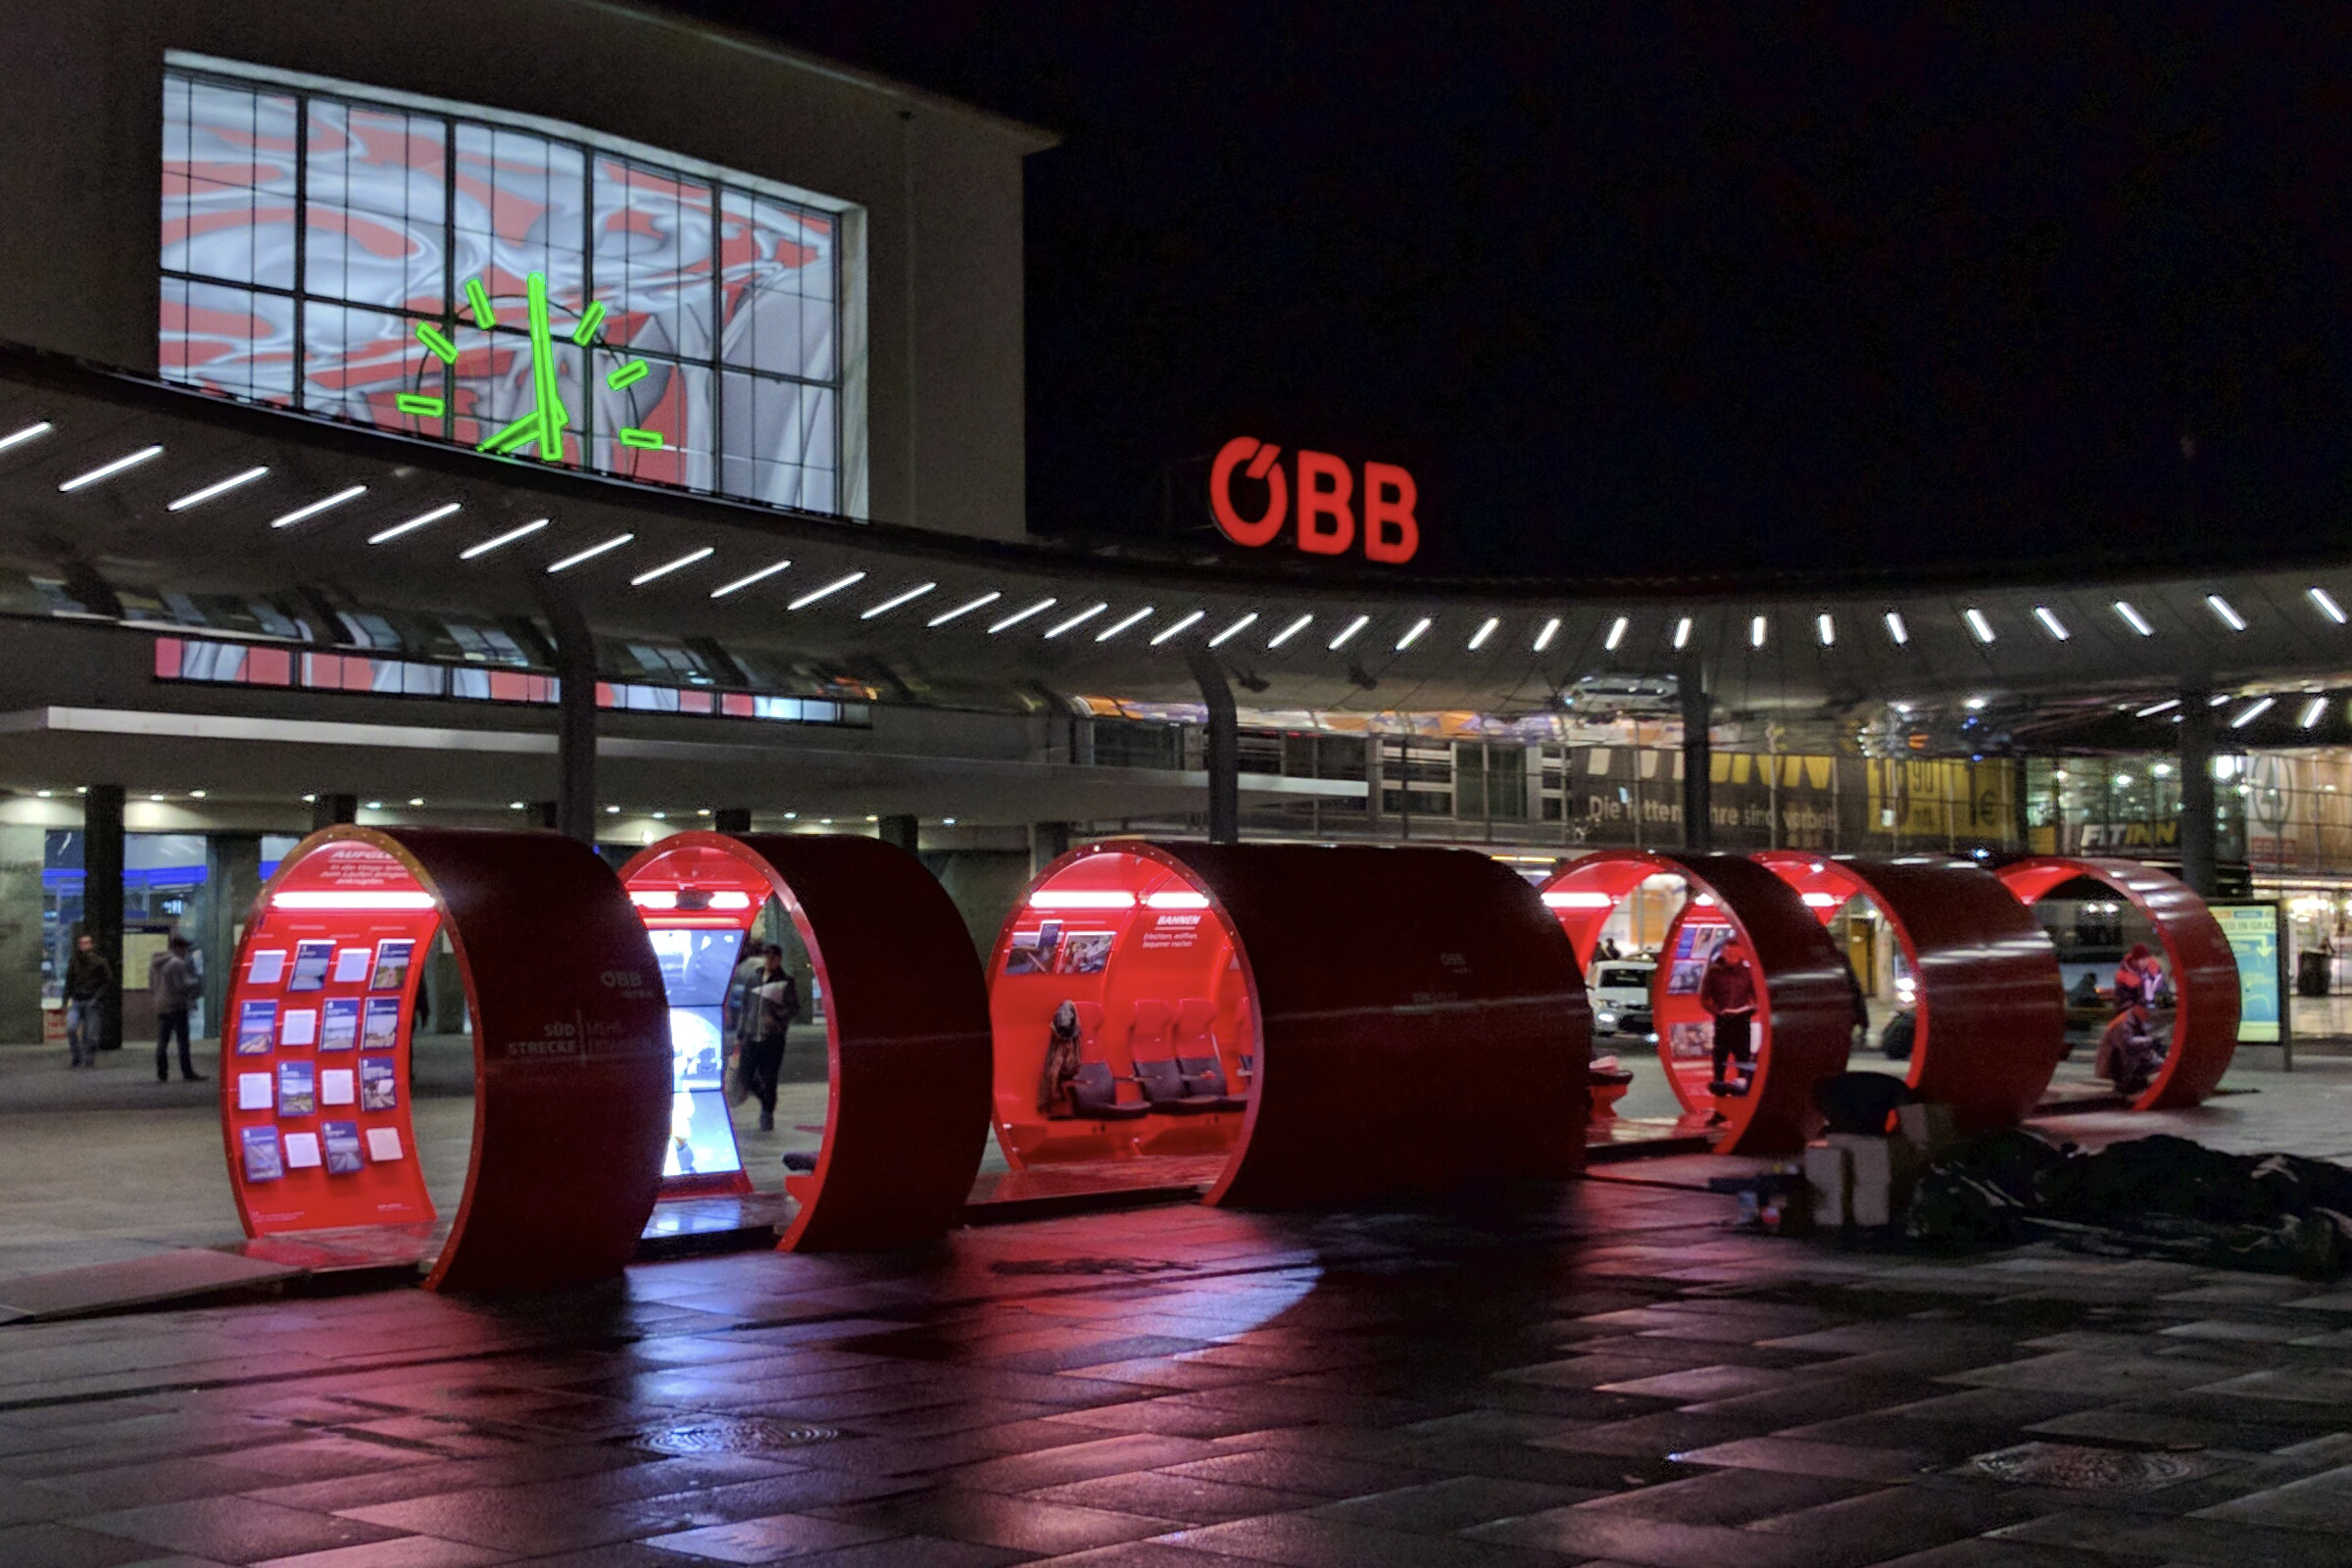 ÖBB on Tour, Roadshow durchgeführt von KOOP Live Marketing Roadshows Graz, Wien, Steyregg/Linz